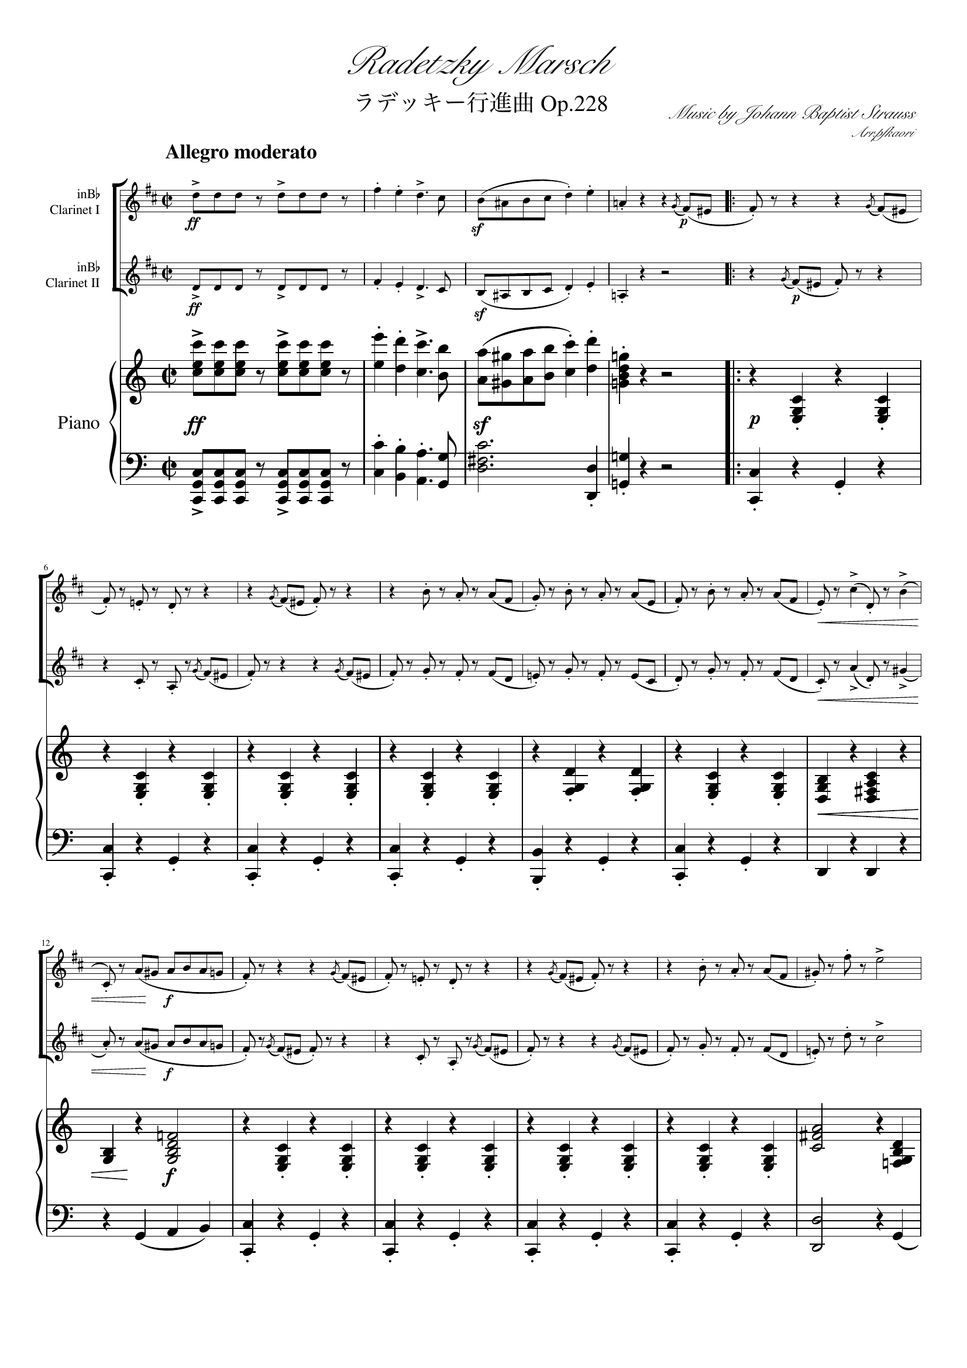 ヨハンシュトラウス1世 - ラデッキー行進曲 (C・ピアノトリオ/クラリネットデュオ) by pfkaori